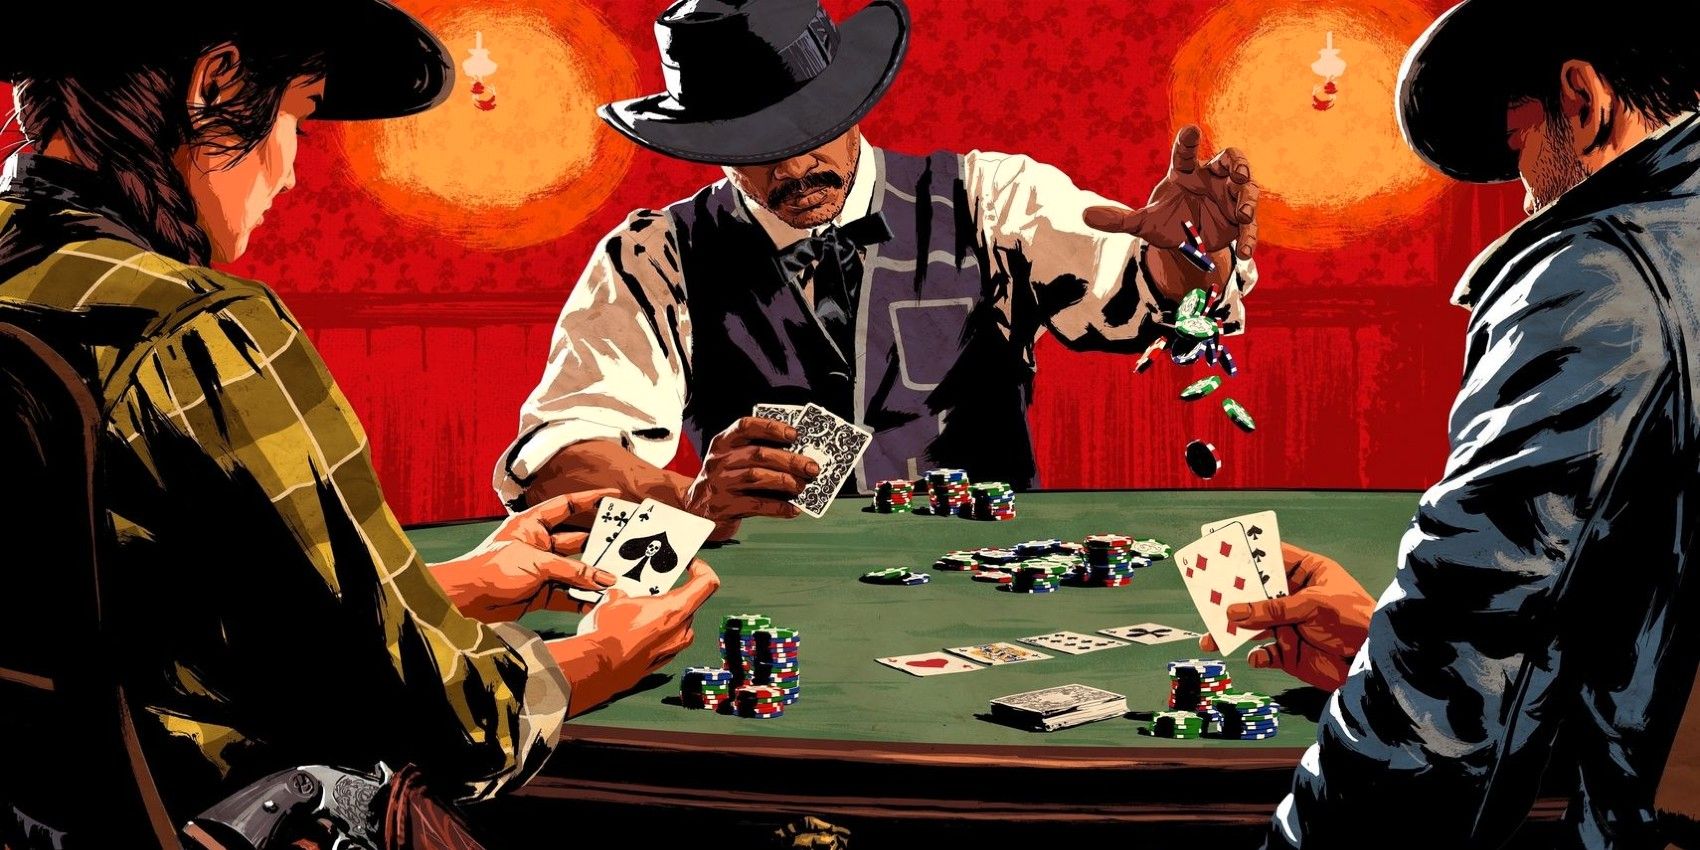 Руководство по игре в покер RDR2: как играть и выигрывать